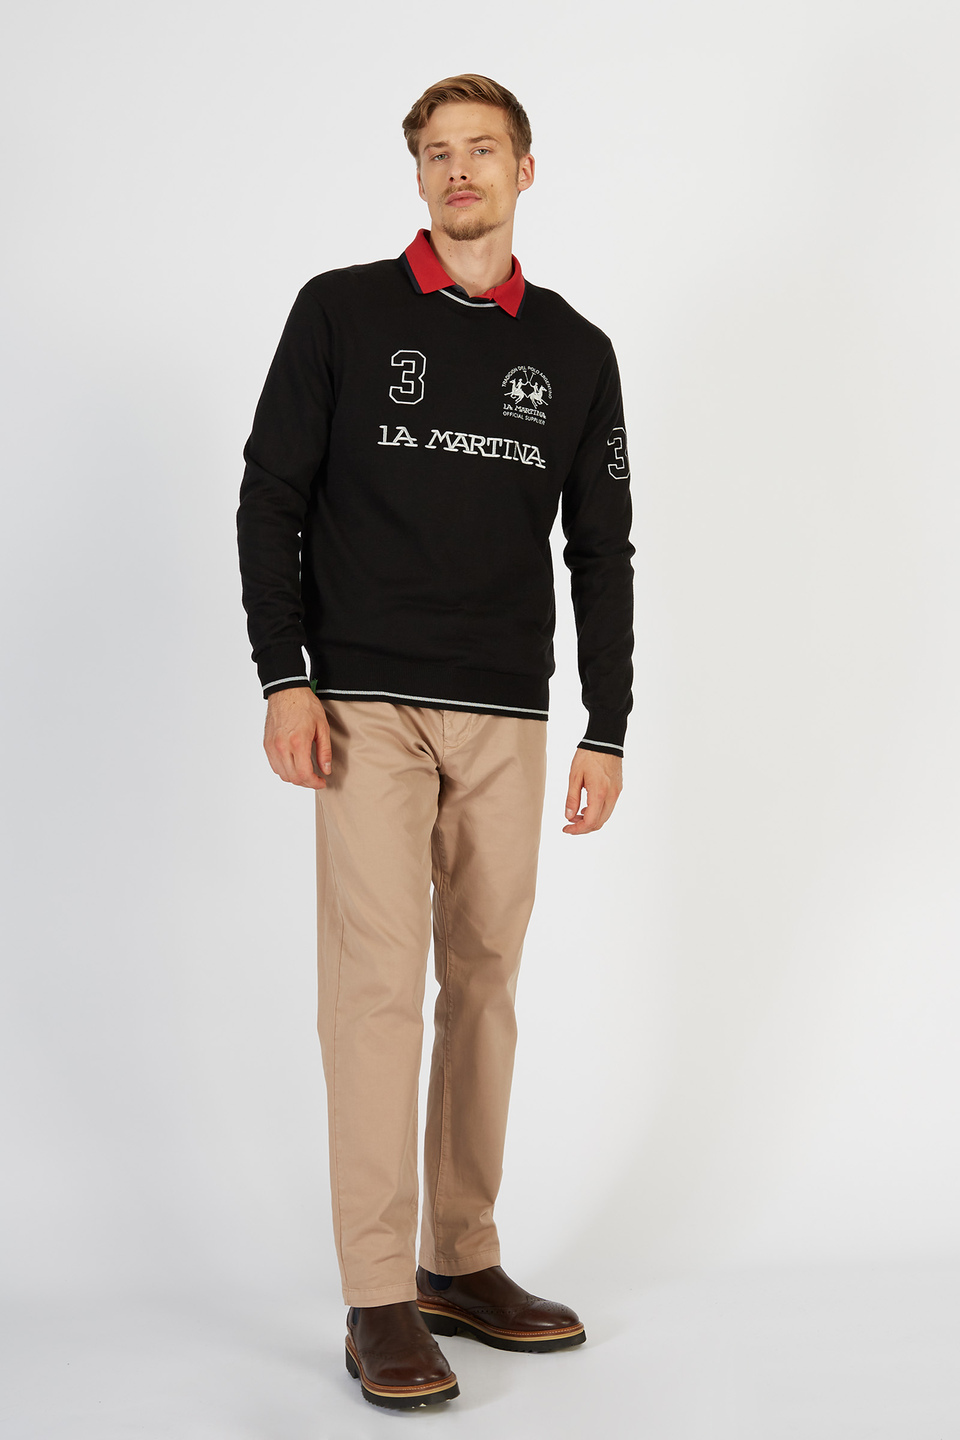 Maglia tricot da uomo in misto cotone girocollo regular fit | La Martina - Official Online Shop